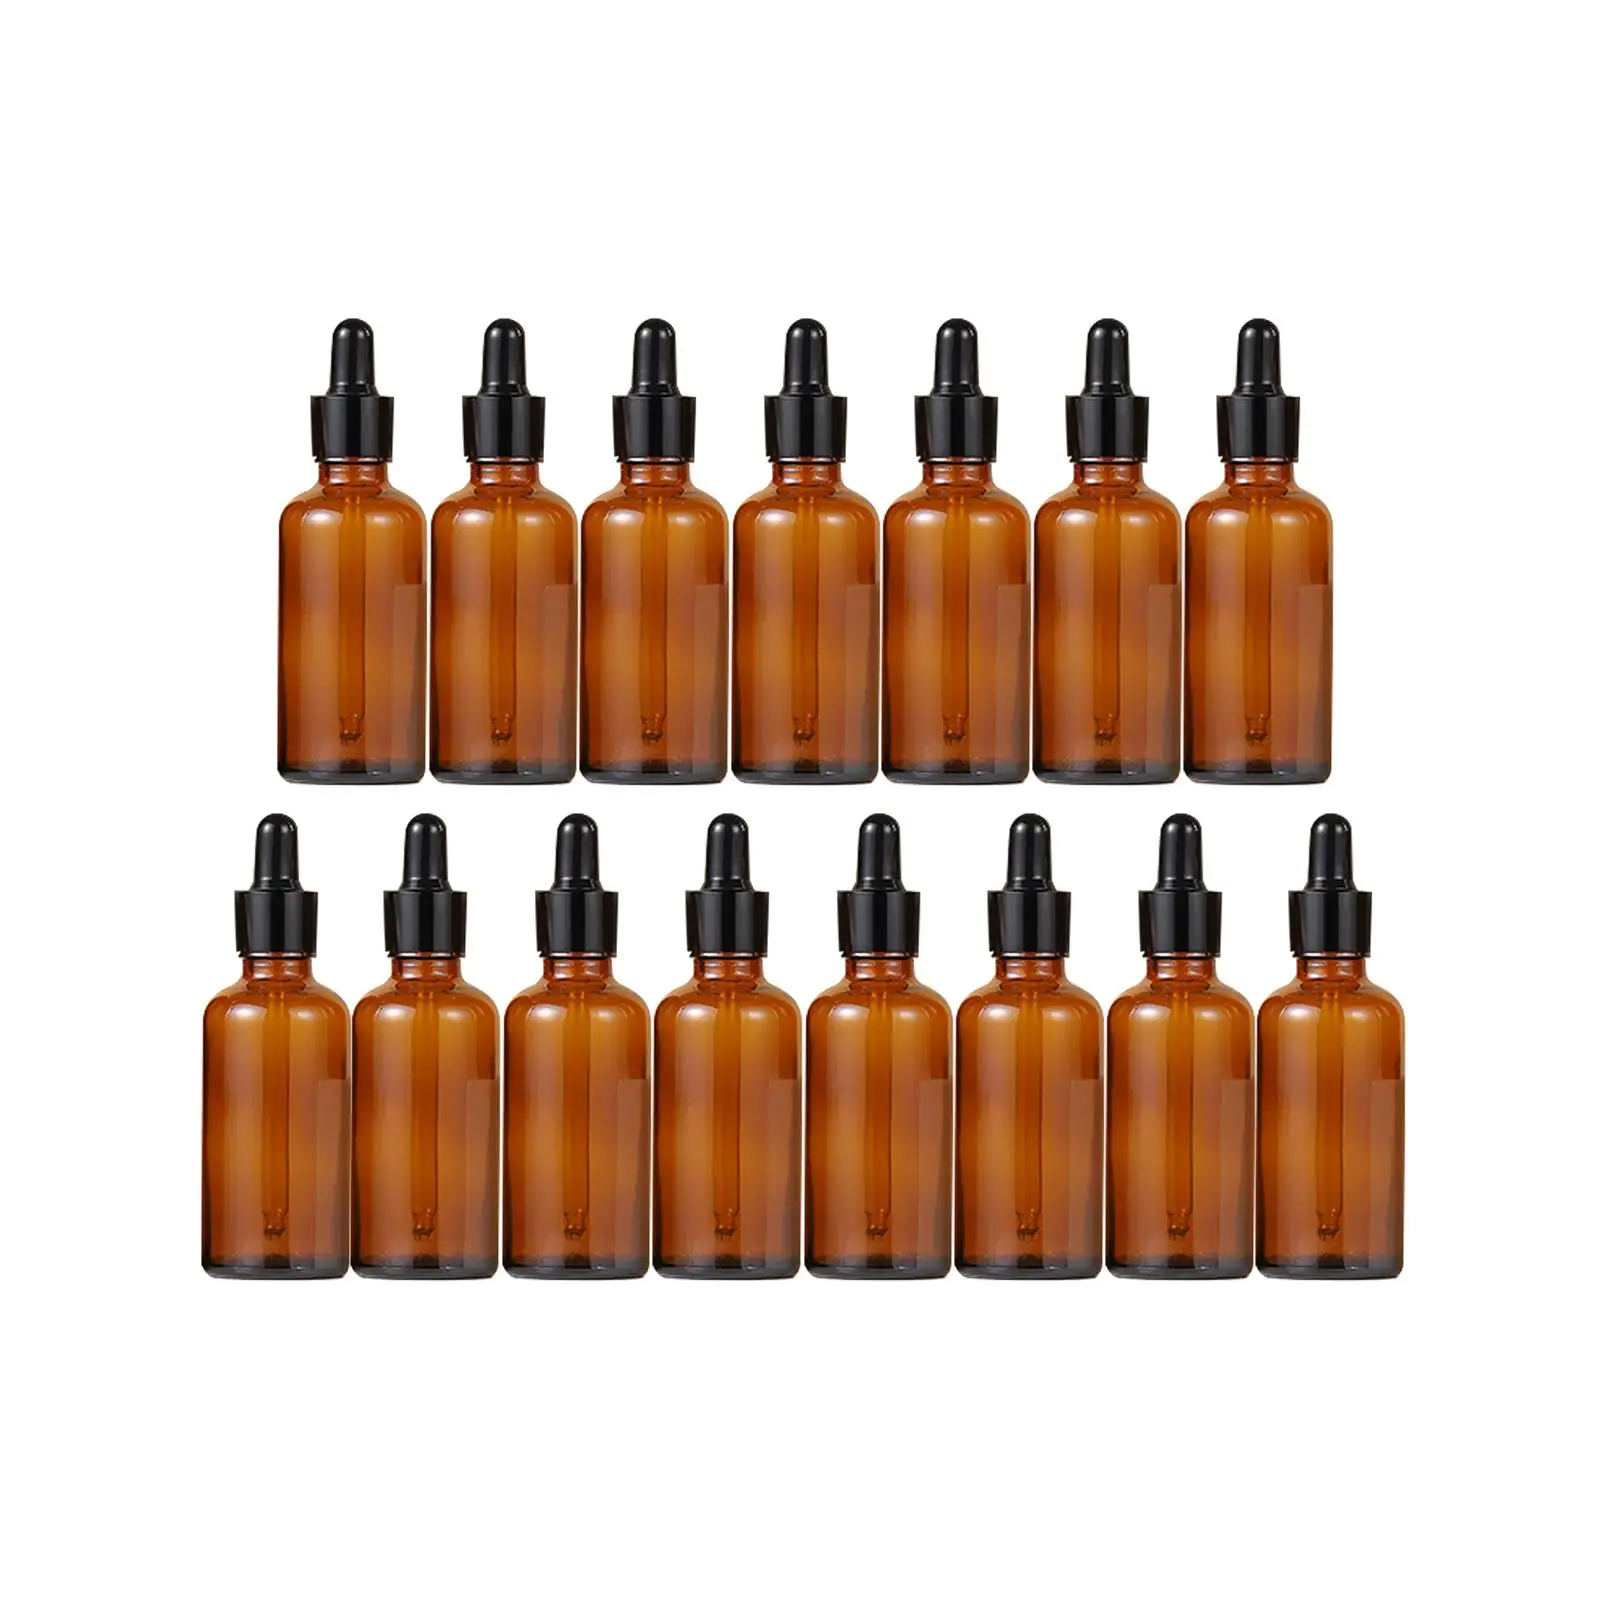 15Pcs Dropper Bottles Refillable Portable Thick Storage for Essential Oils Liquids 30ml Durable Travel Bottles Tincture Bottles